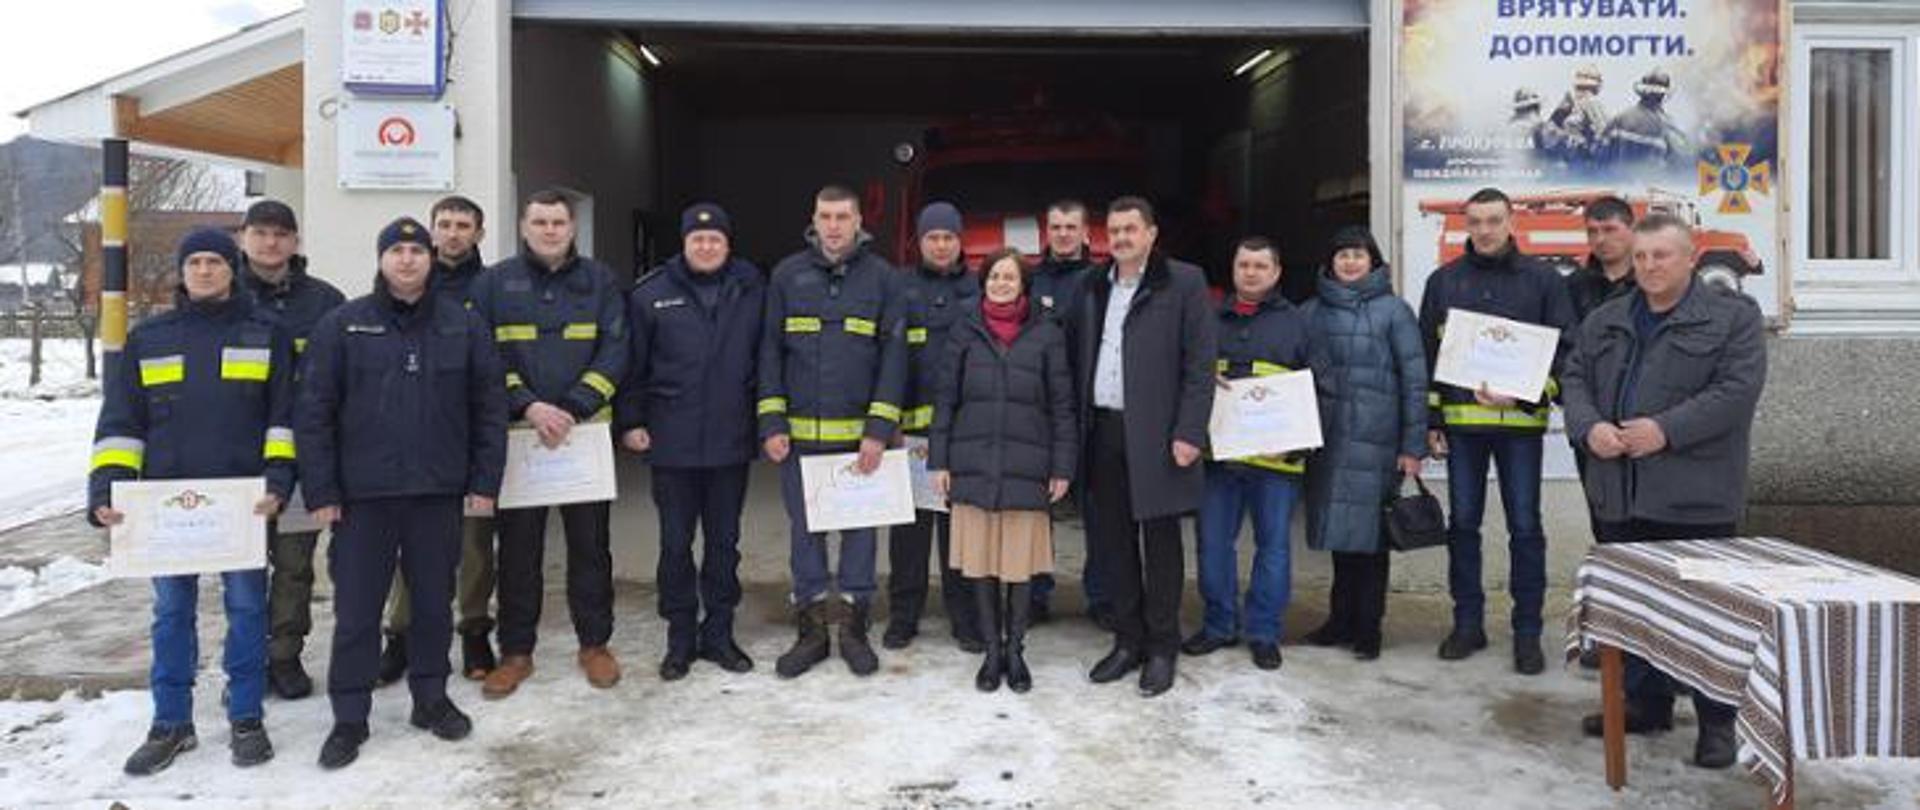 Strażacy Ochotniczej Jednostki Straży Pożarnej w Prokurawie otrzymali nowoczesny moduł przeciwpożarowy i wiele innych urządzeń